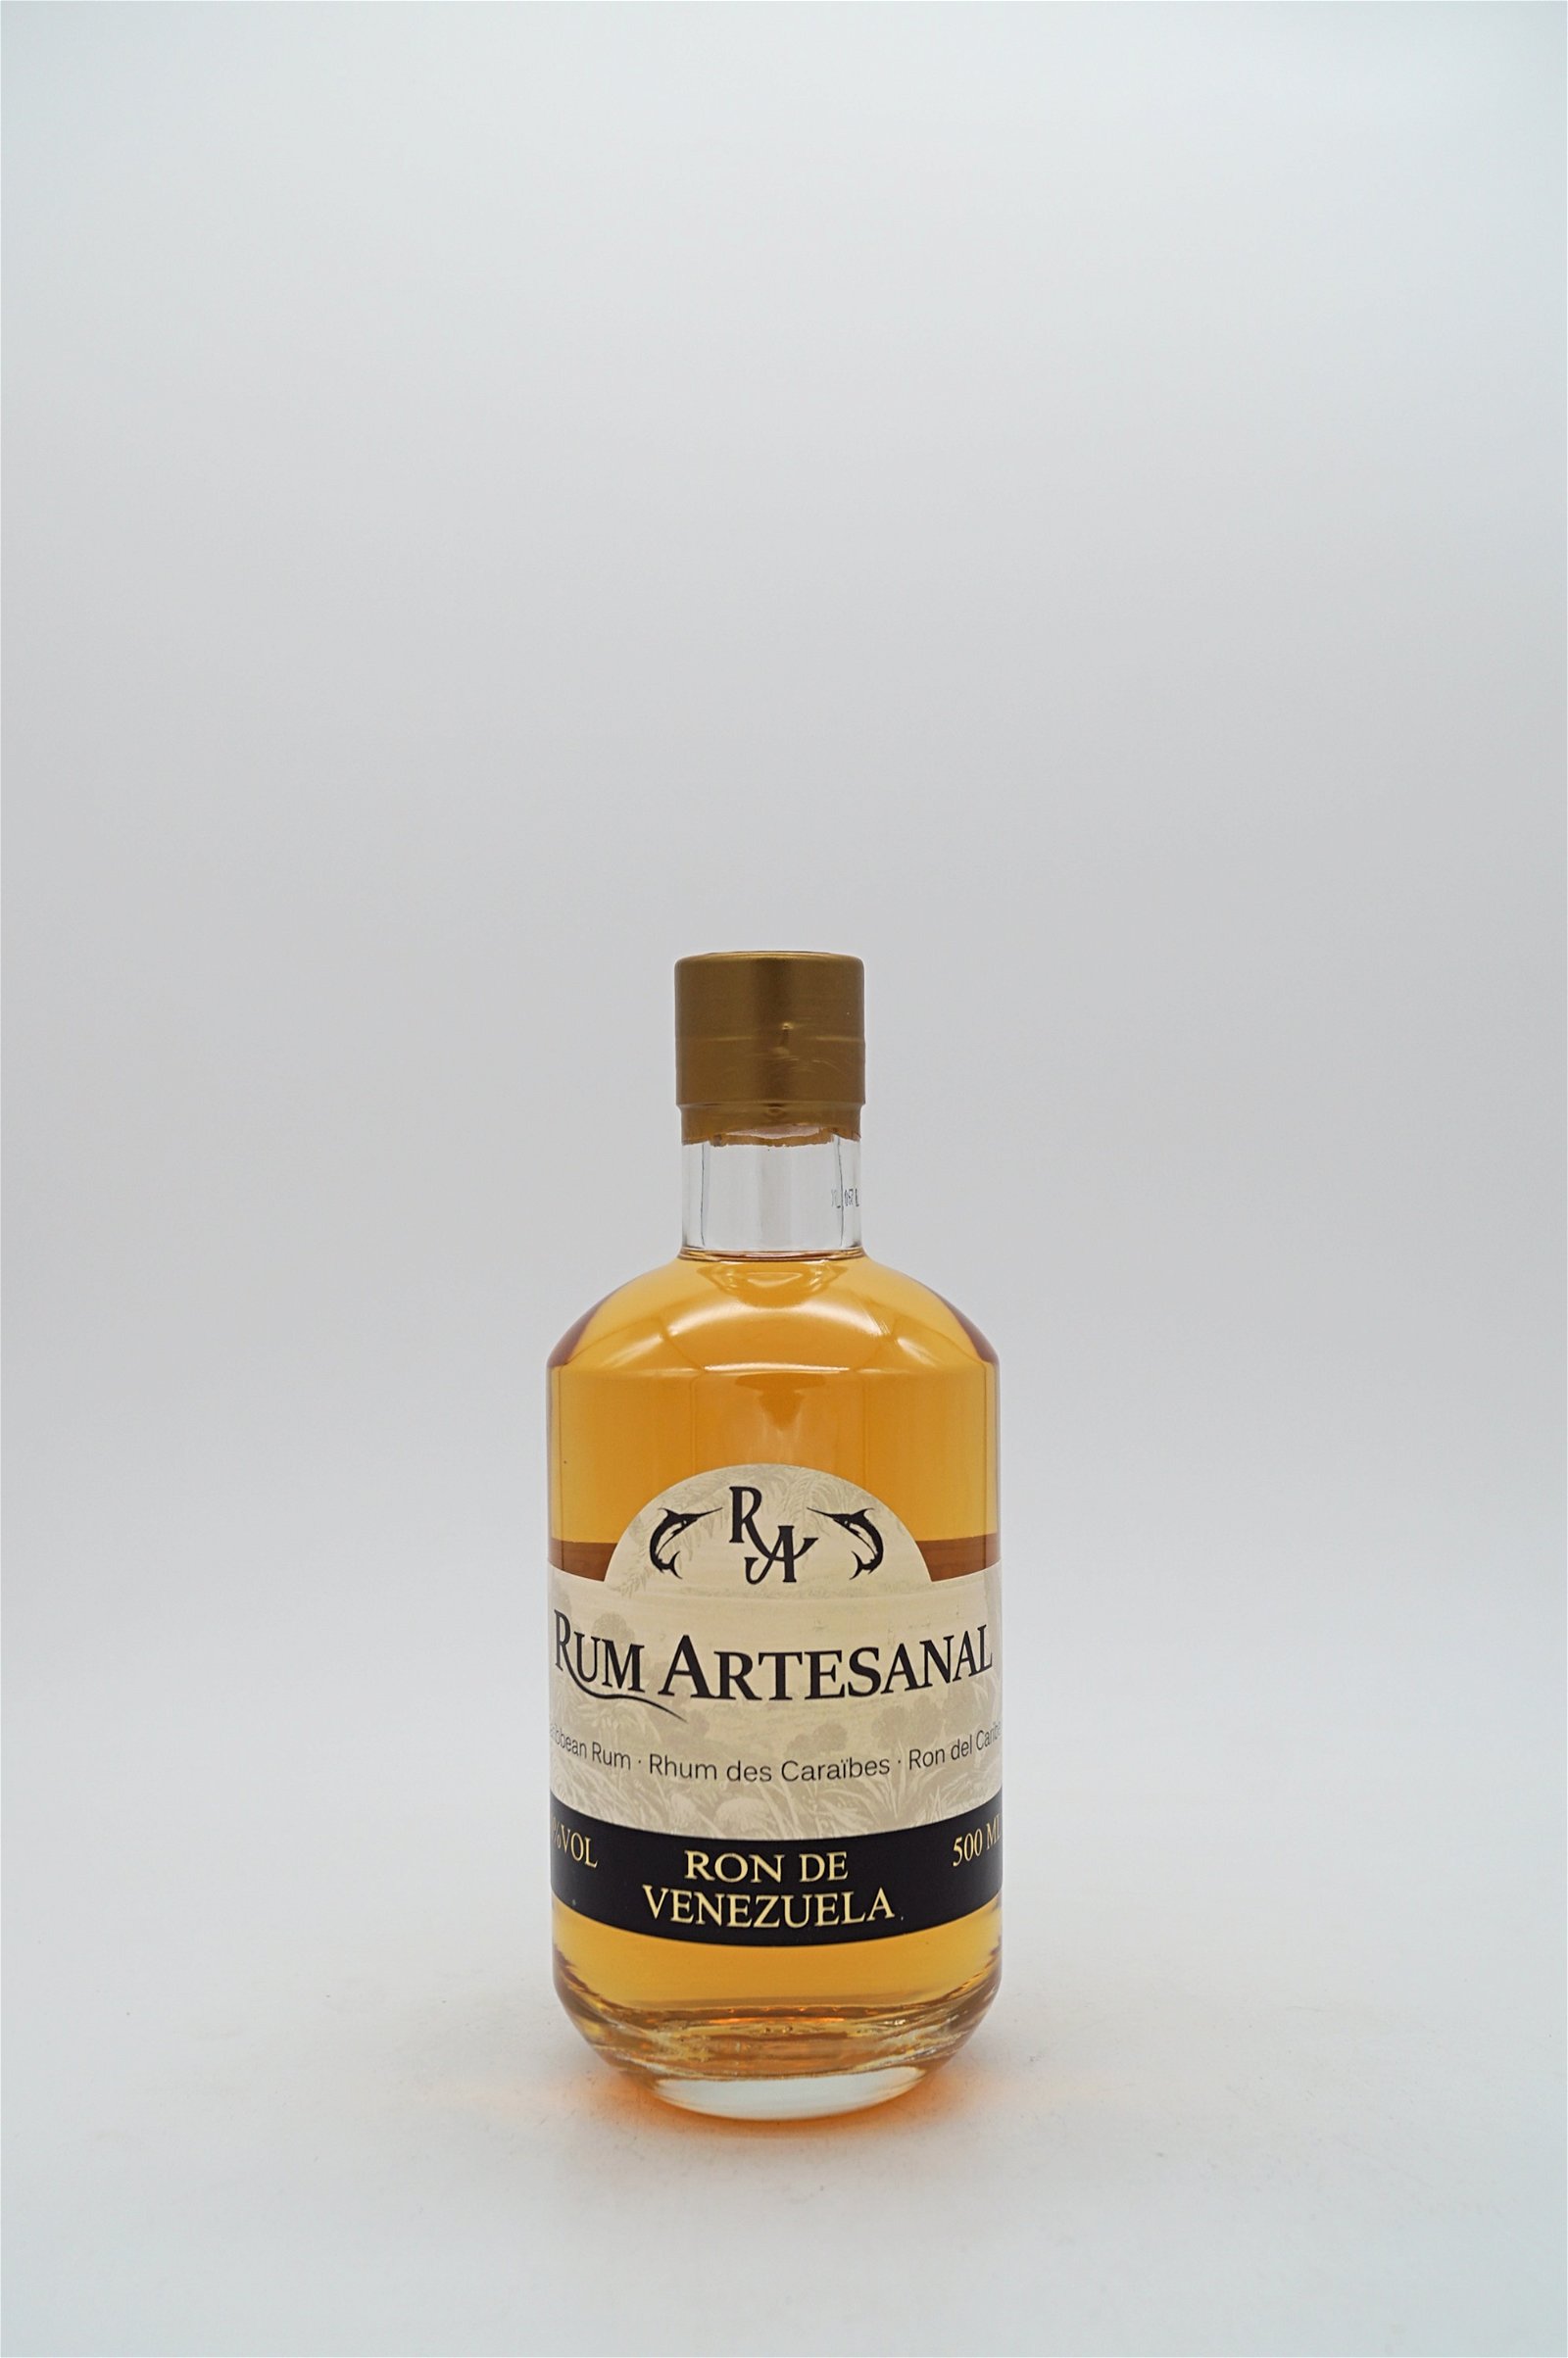 Rum Artesanal Ron de Venezuela